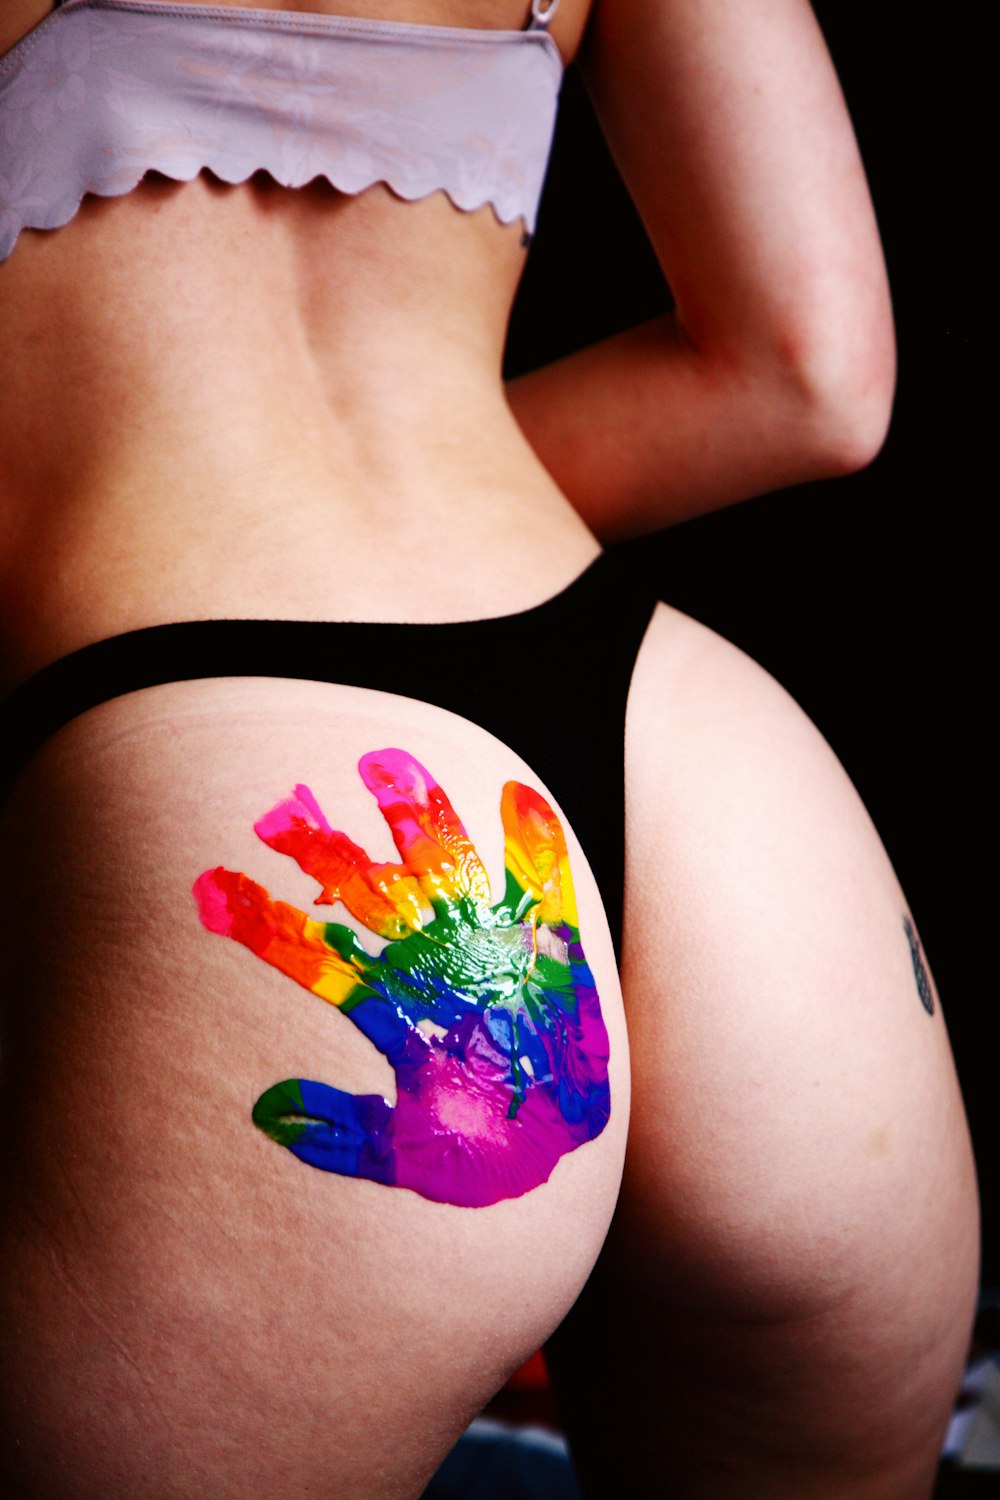 donna in canotta nera con tatuaggio farfalla rosa, blu e giallo